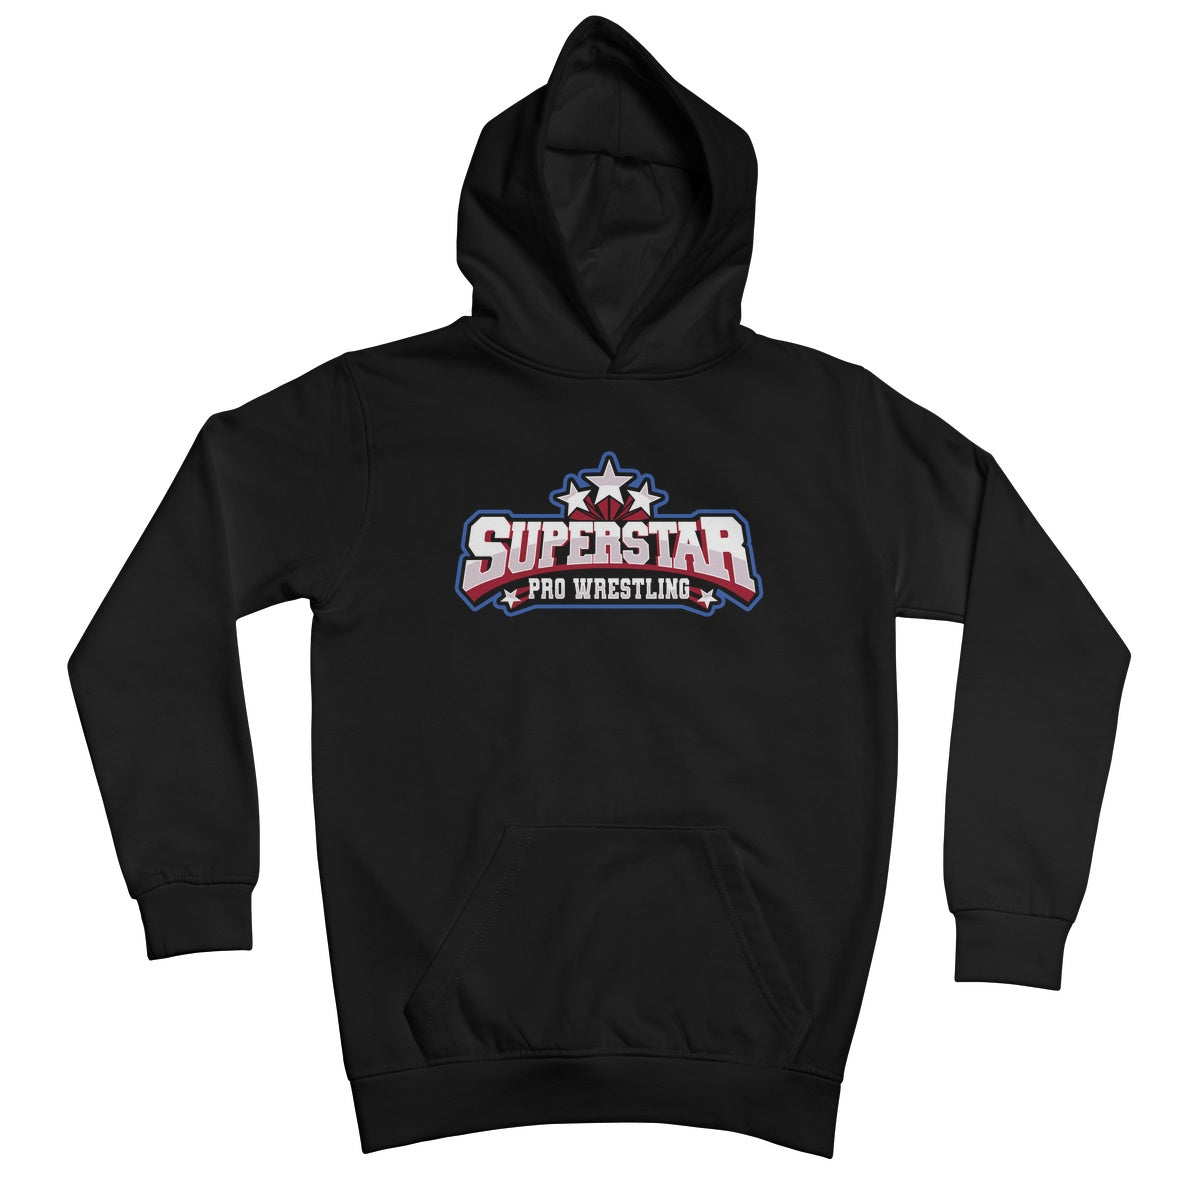 Shotgun Superstar Logo by deadspirit6 on DeviantArt